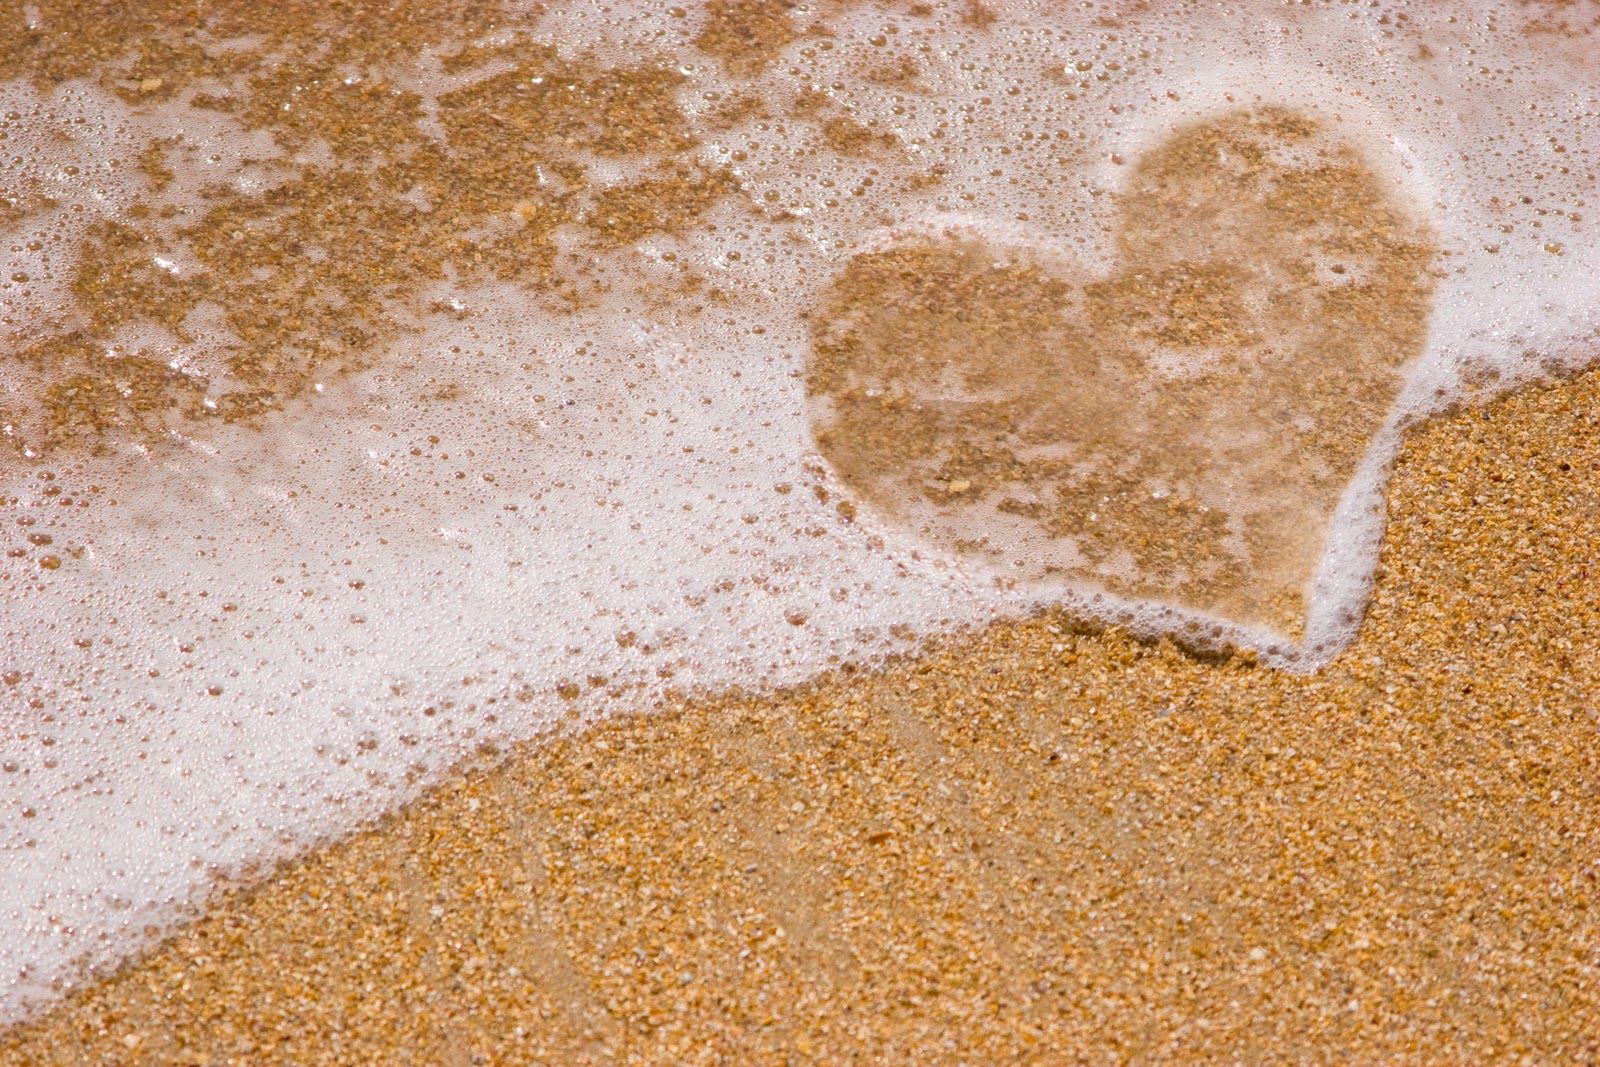 1600x1067 Love Heart Beach Sand Water HD wallpaper (1600 x 1067 ) - HD Beach on WallpaperBat